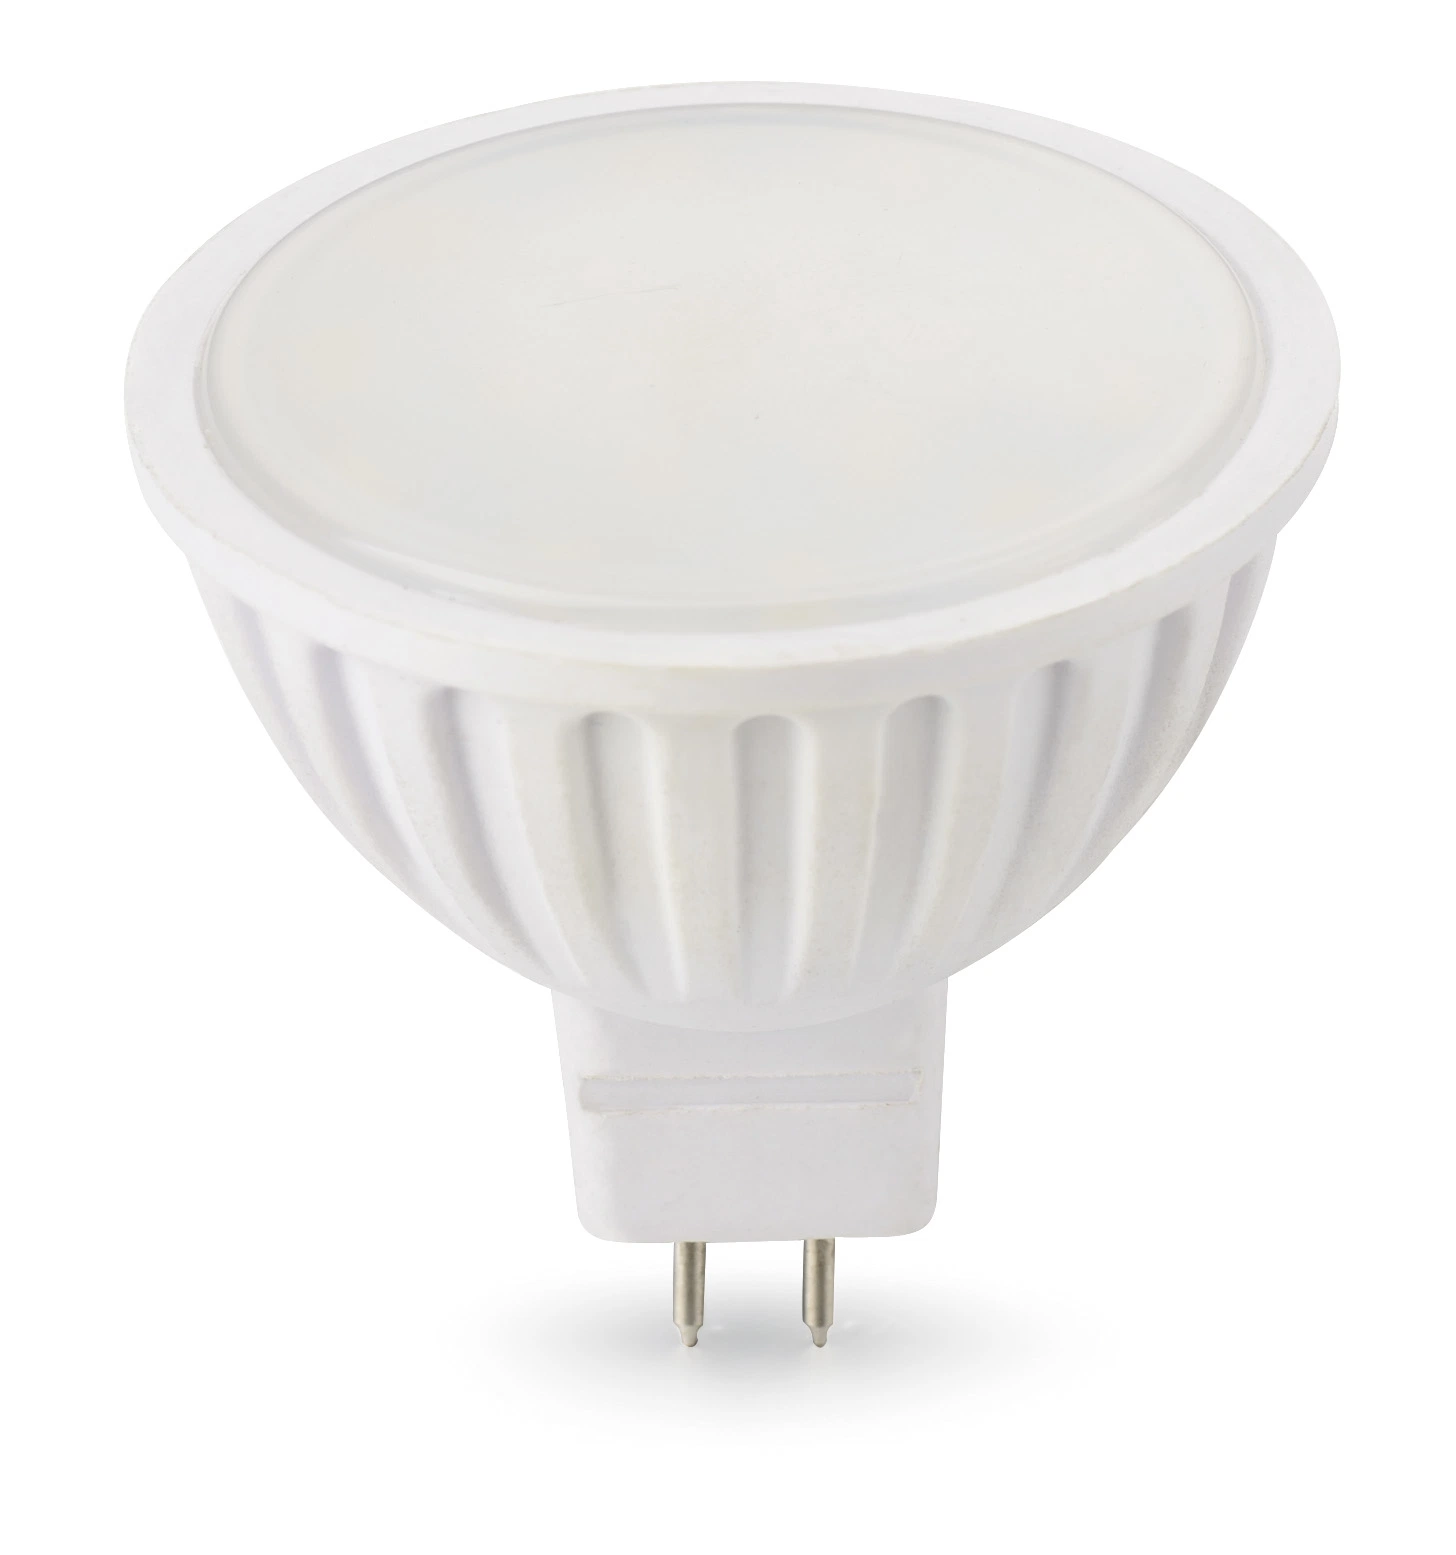 Lampe für Indoor Commercial Spot Beleuchtung mit GU10 MR16 GU5,3